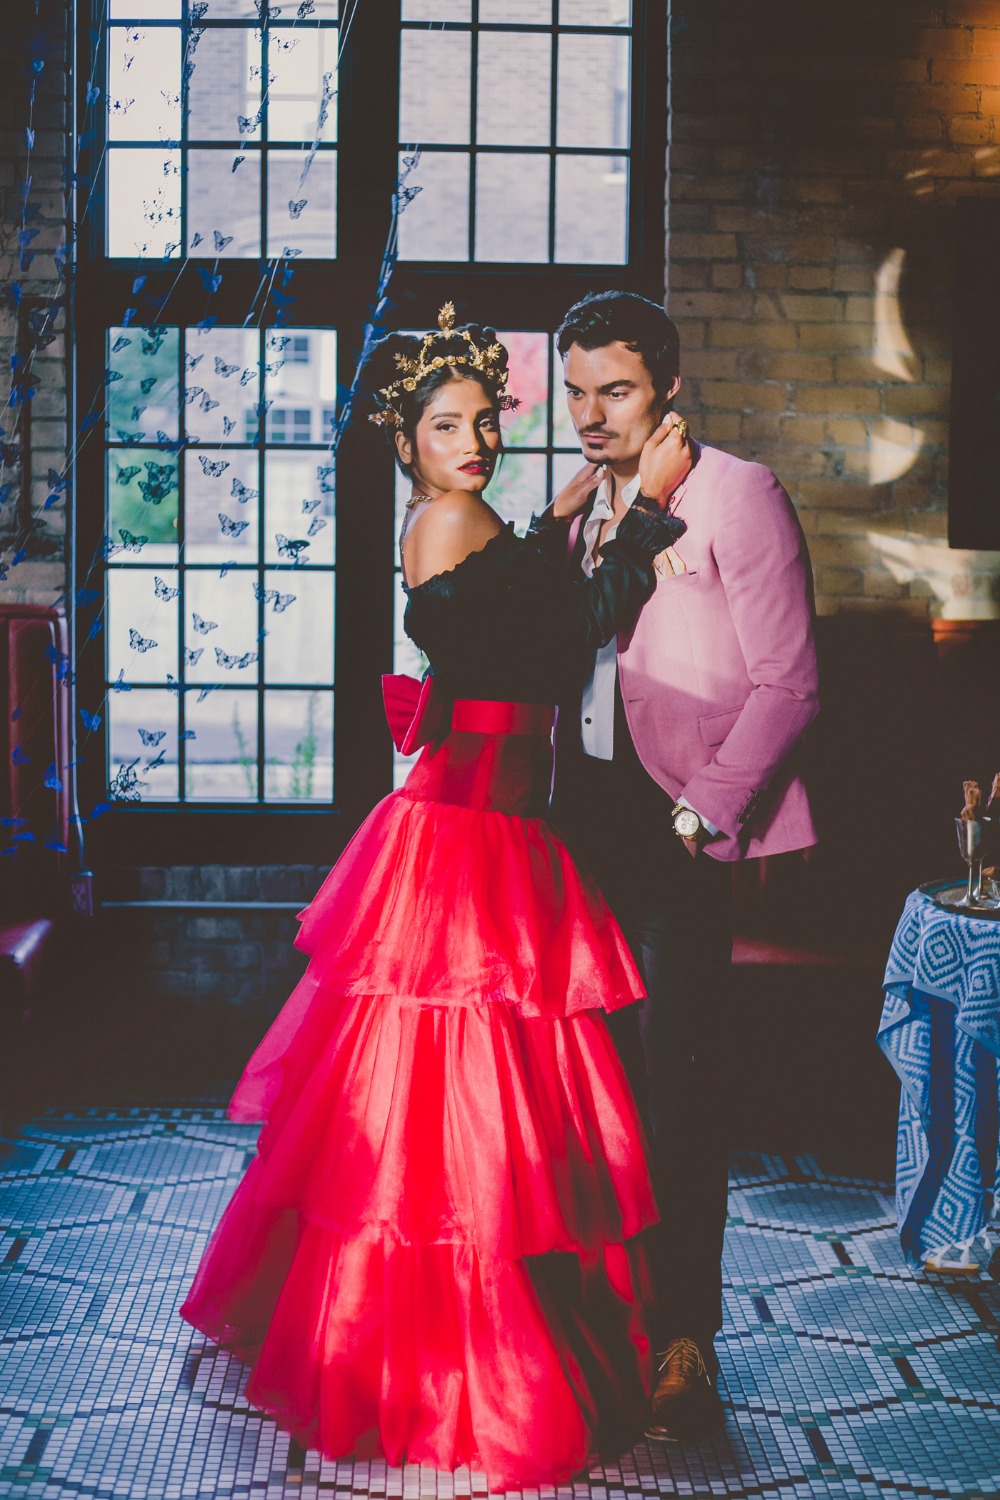 Gorgeous wedding shoot inspired by Frida Kahlo